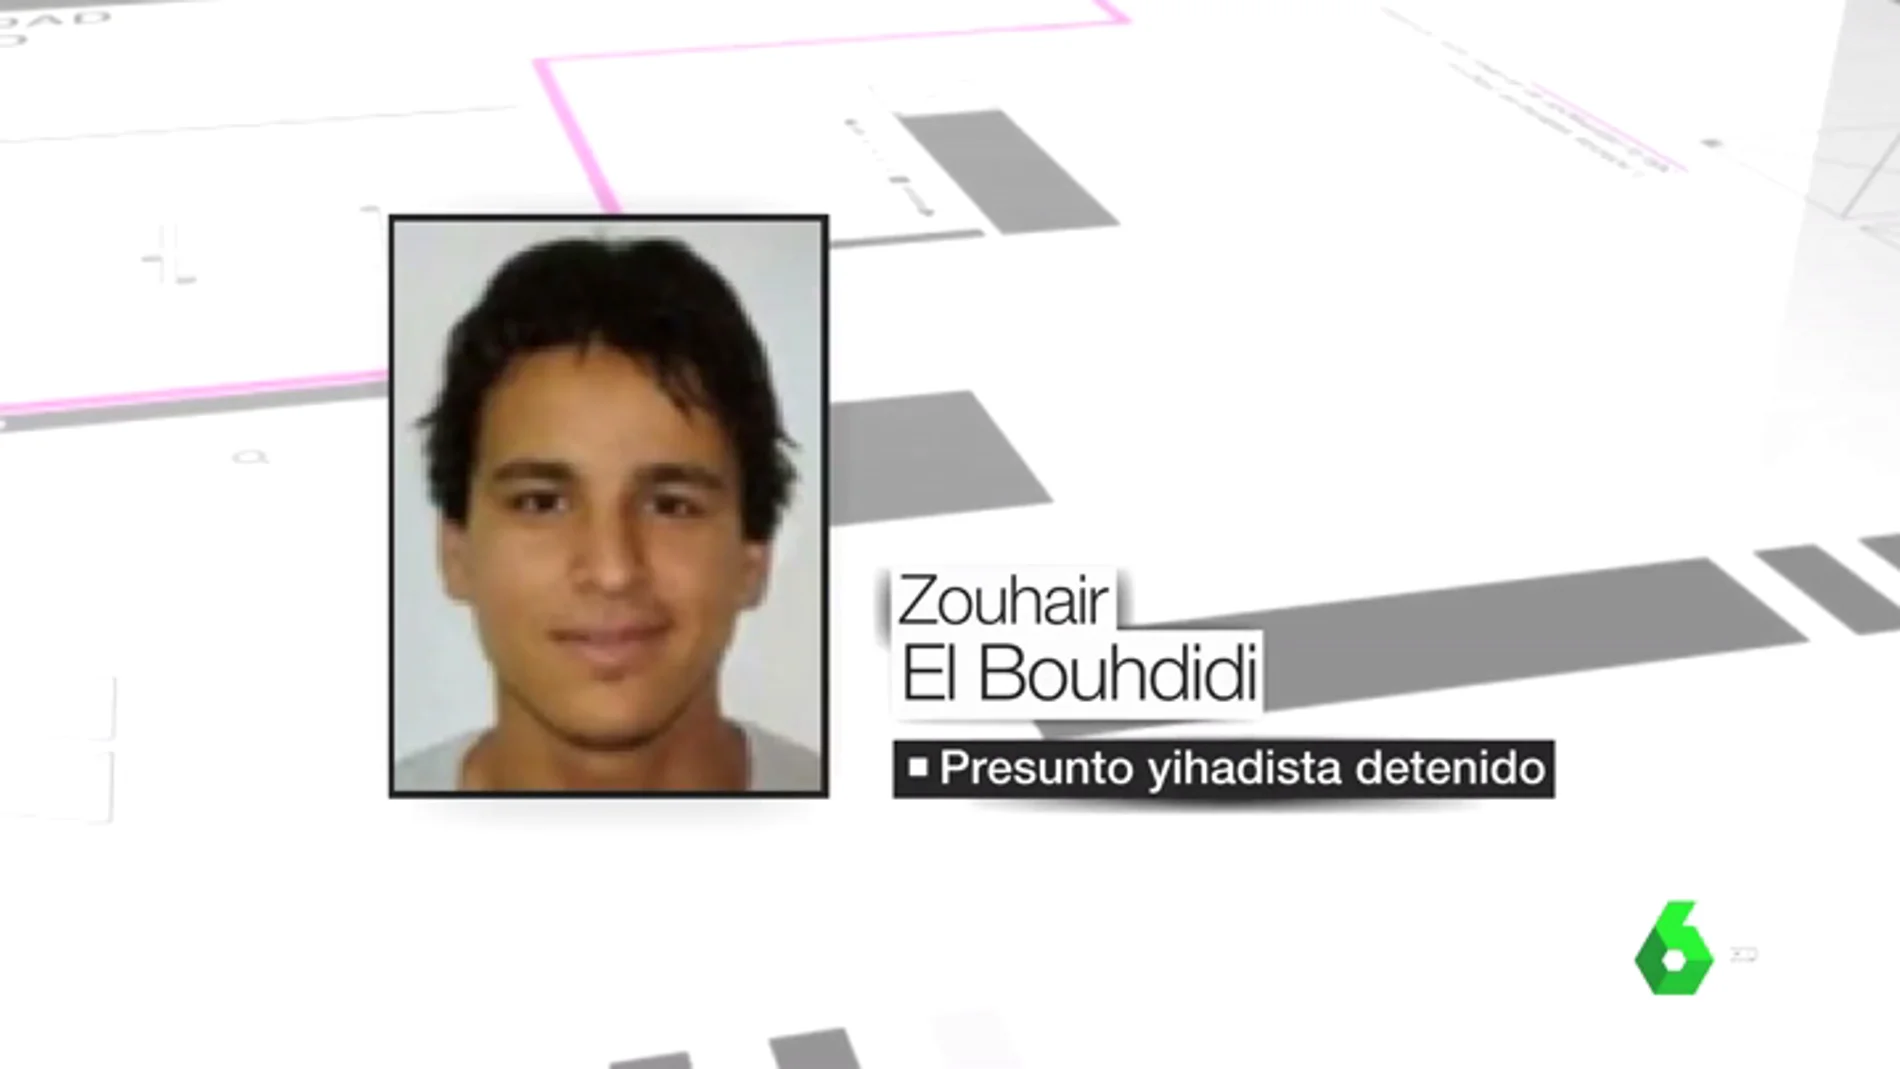 El yihadista detenido, Zouhair El Bouhdidi.